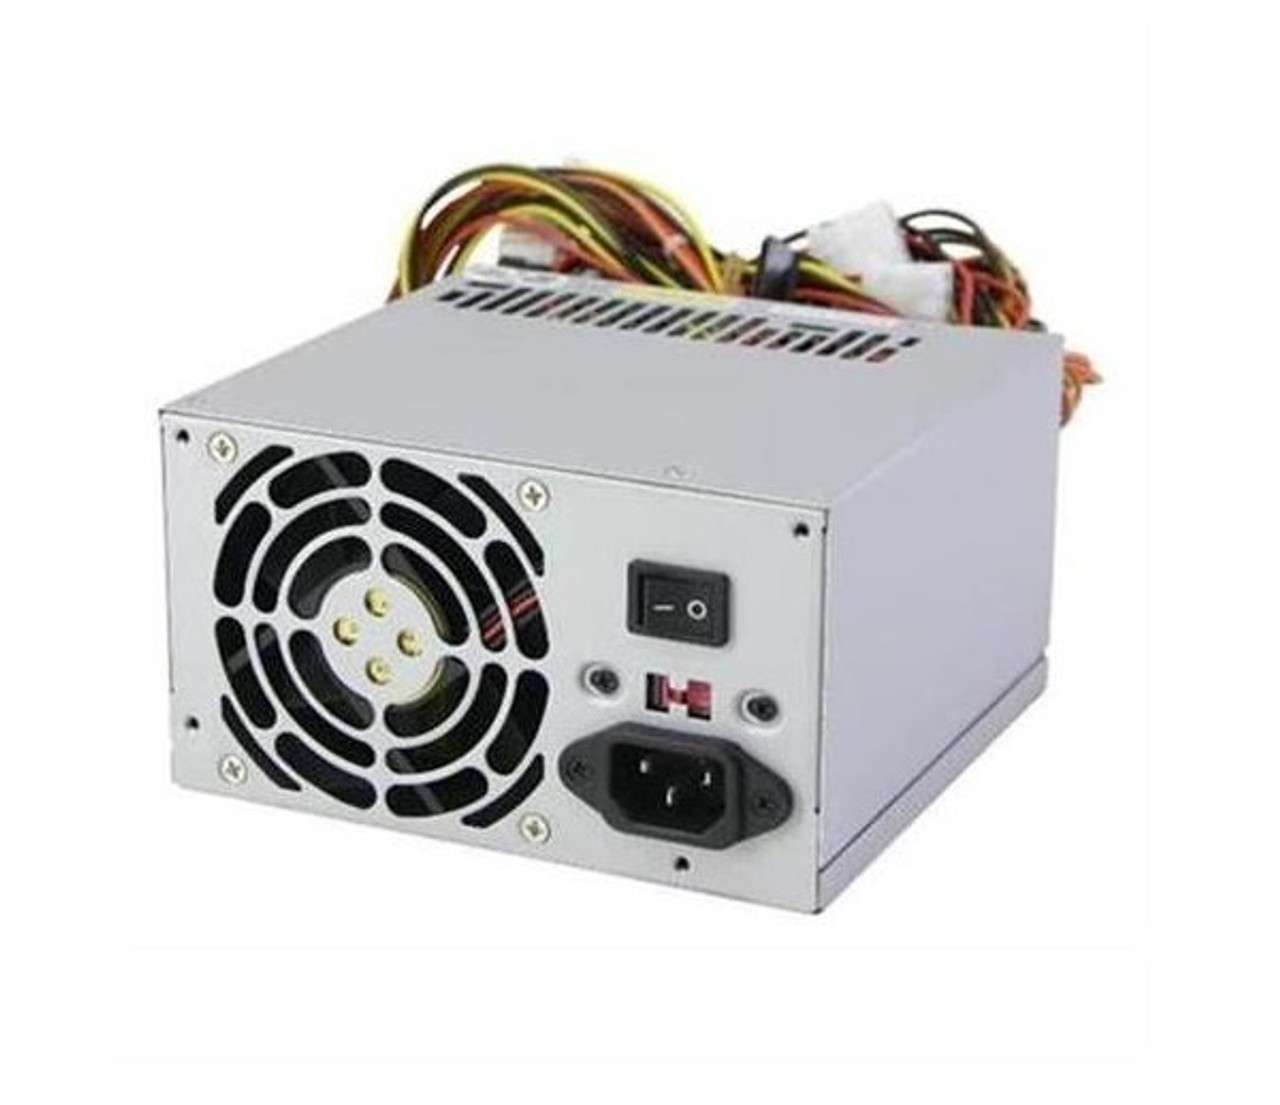 100-809-017 - EMC 1200-Watts Power Supply with Batteries